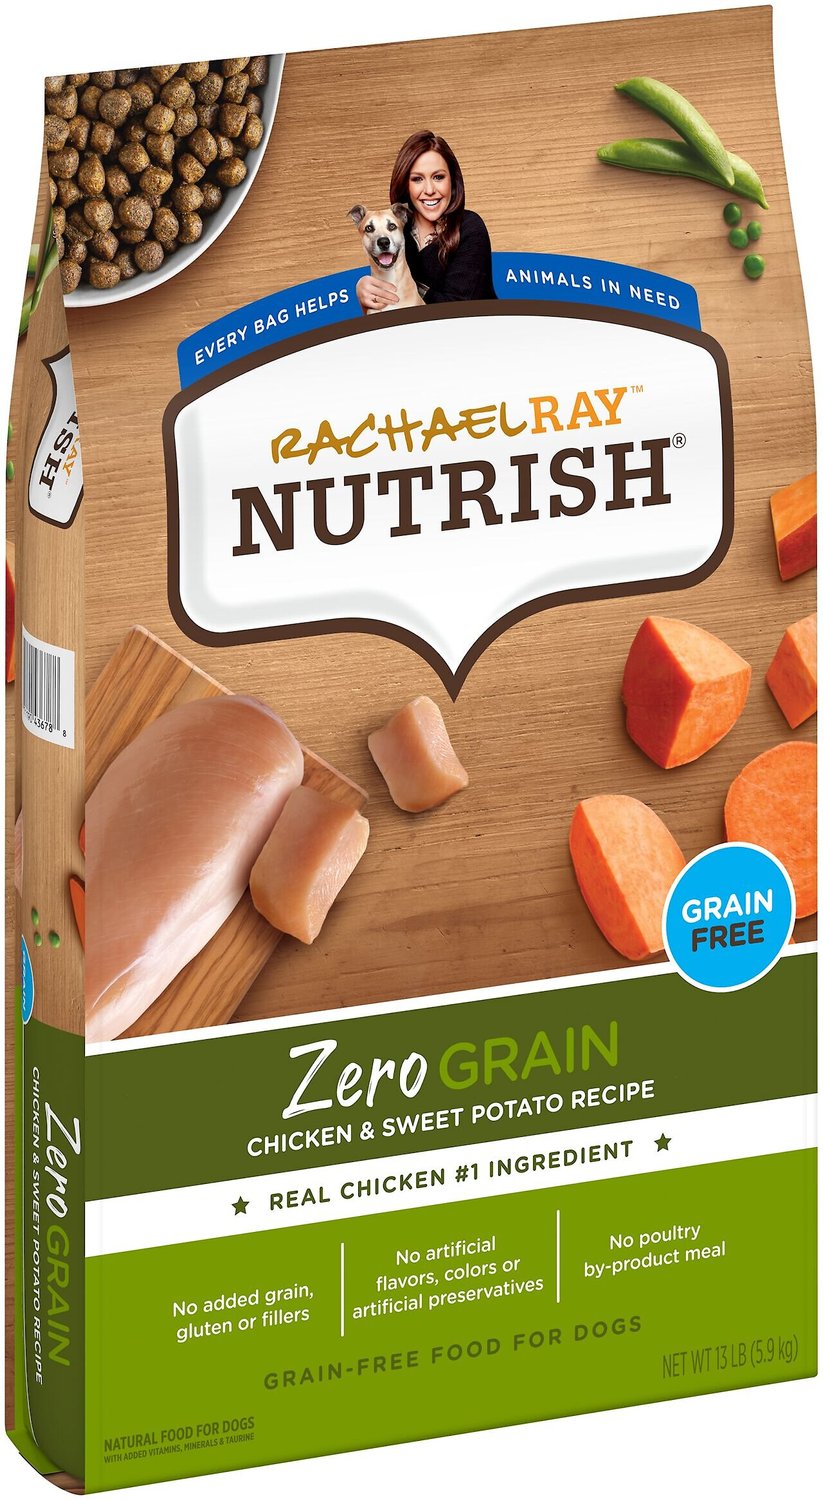 Rachael Ray Nutrish Zero Grain Natural